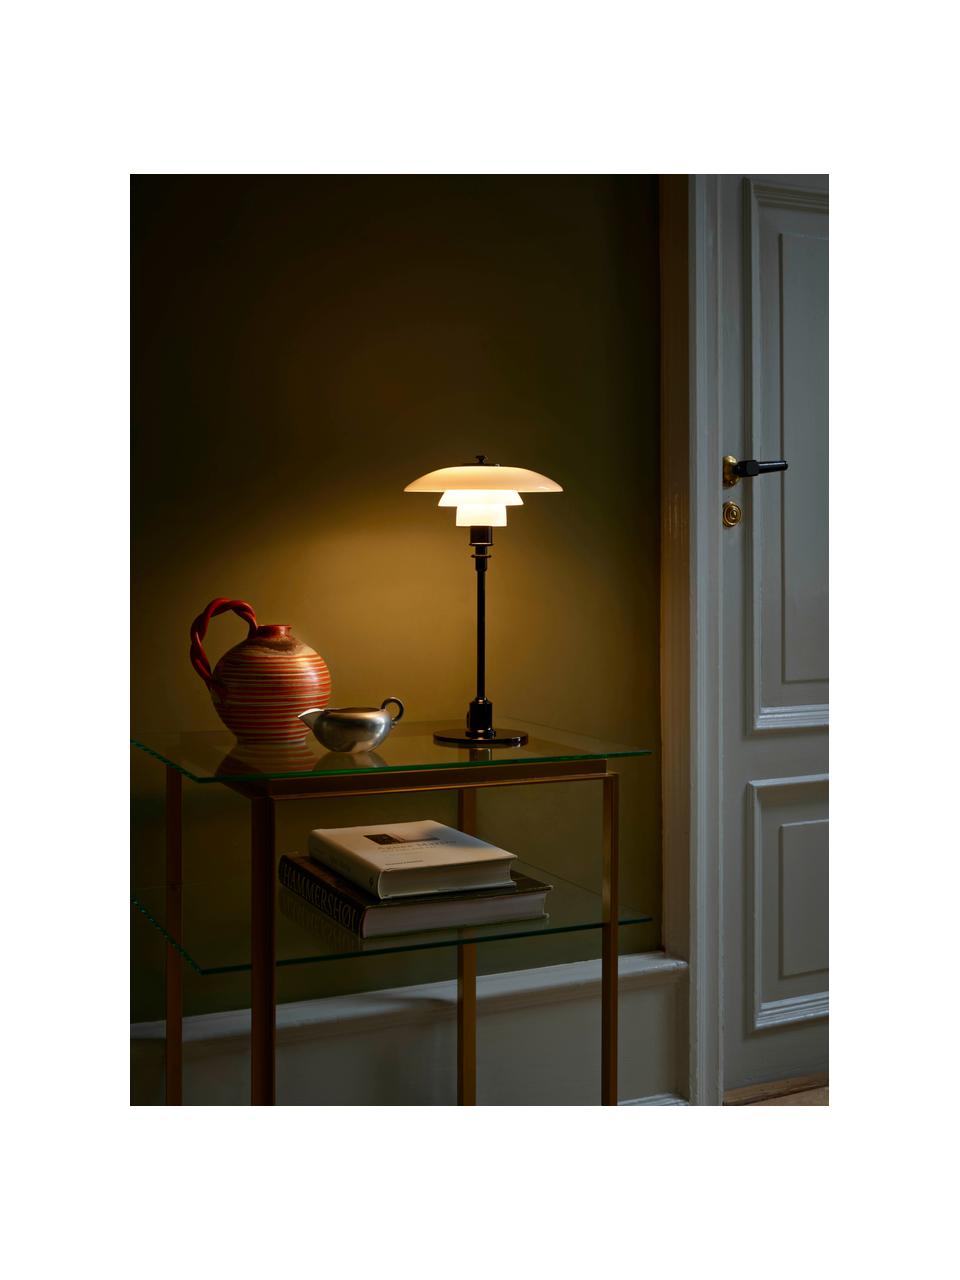 Malá stolová lampa PH 2/1, Čierna, biela, Ø 20 x V 36 cm